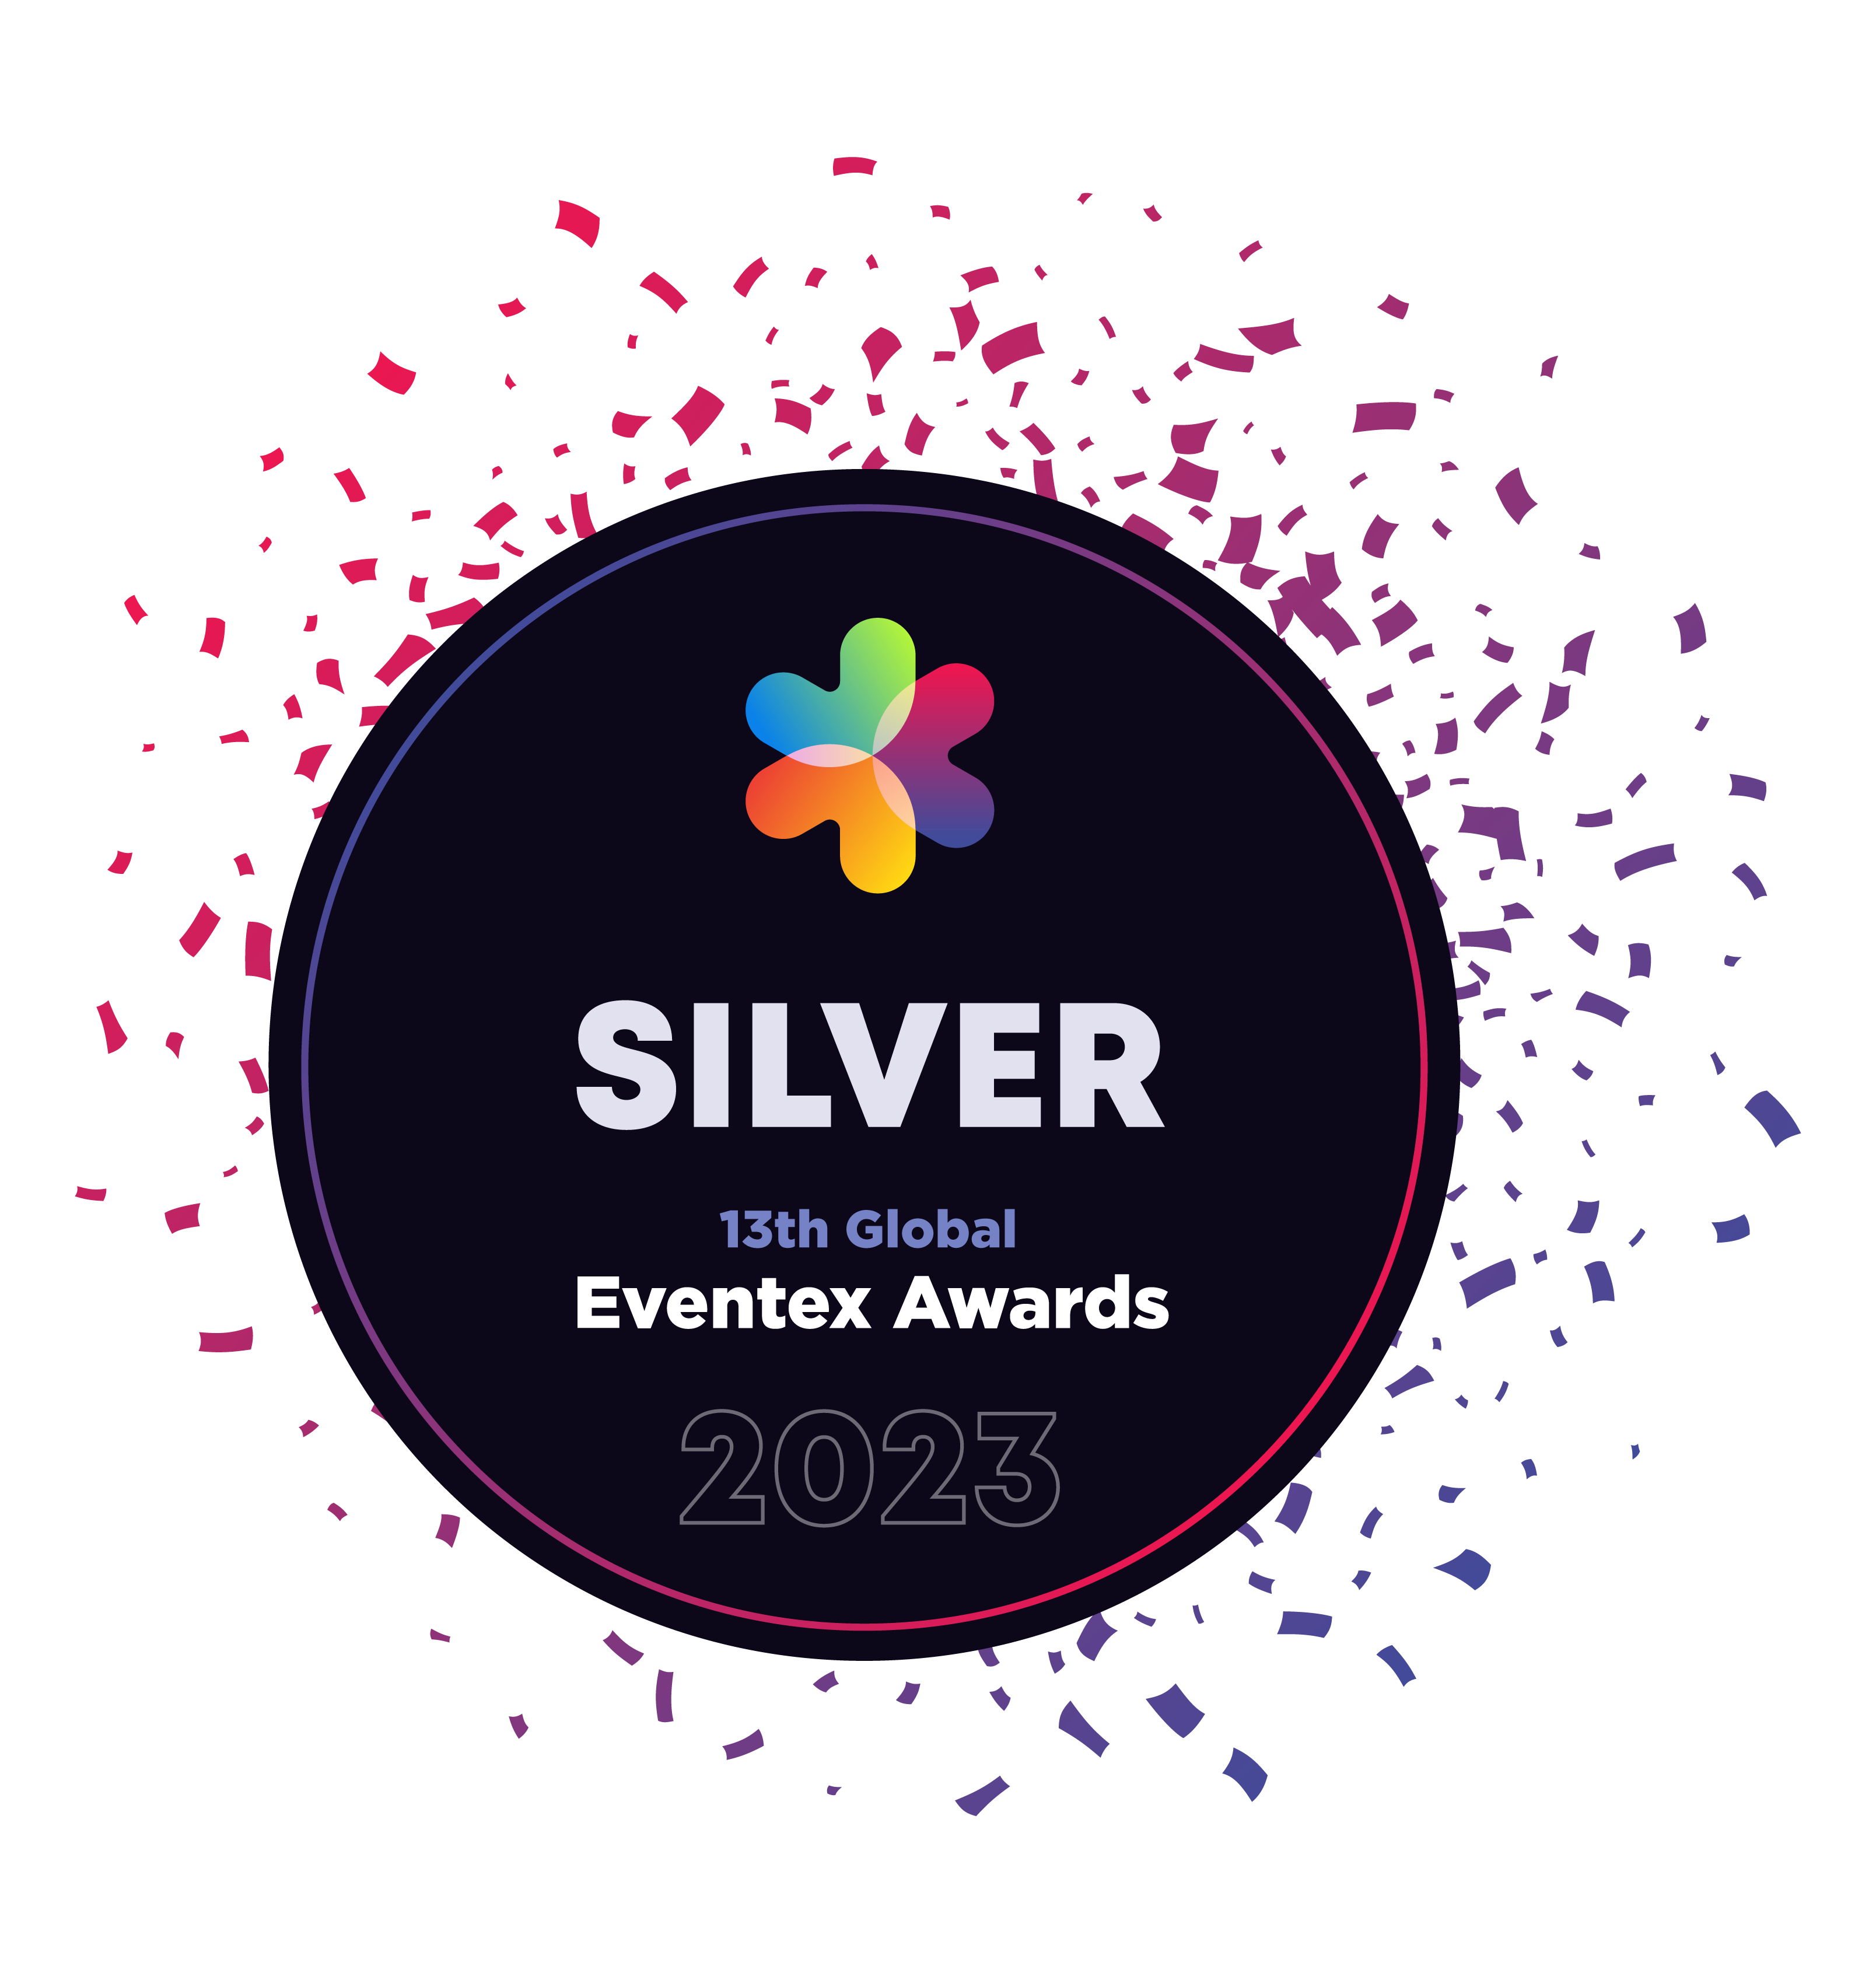 Silver Award for Eventex Awards 2023